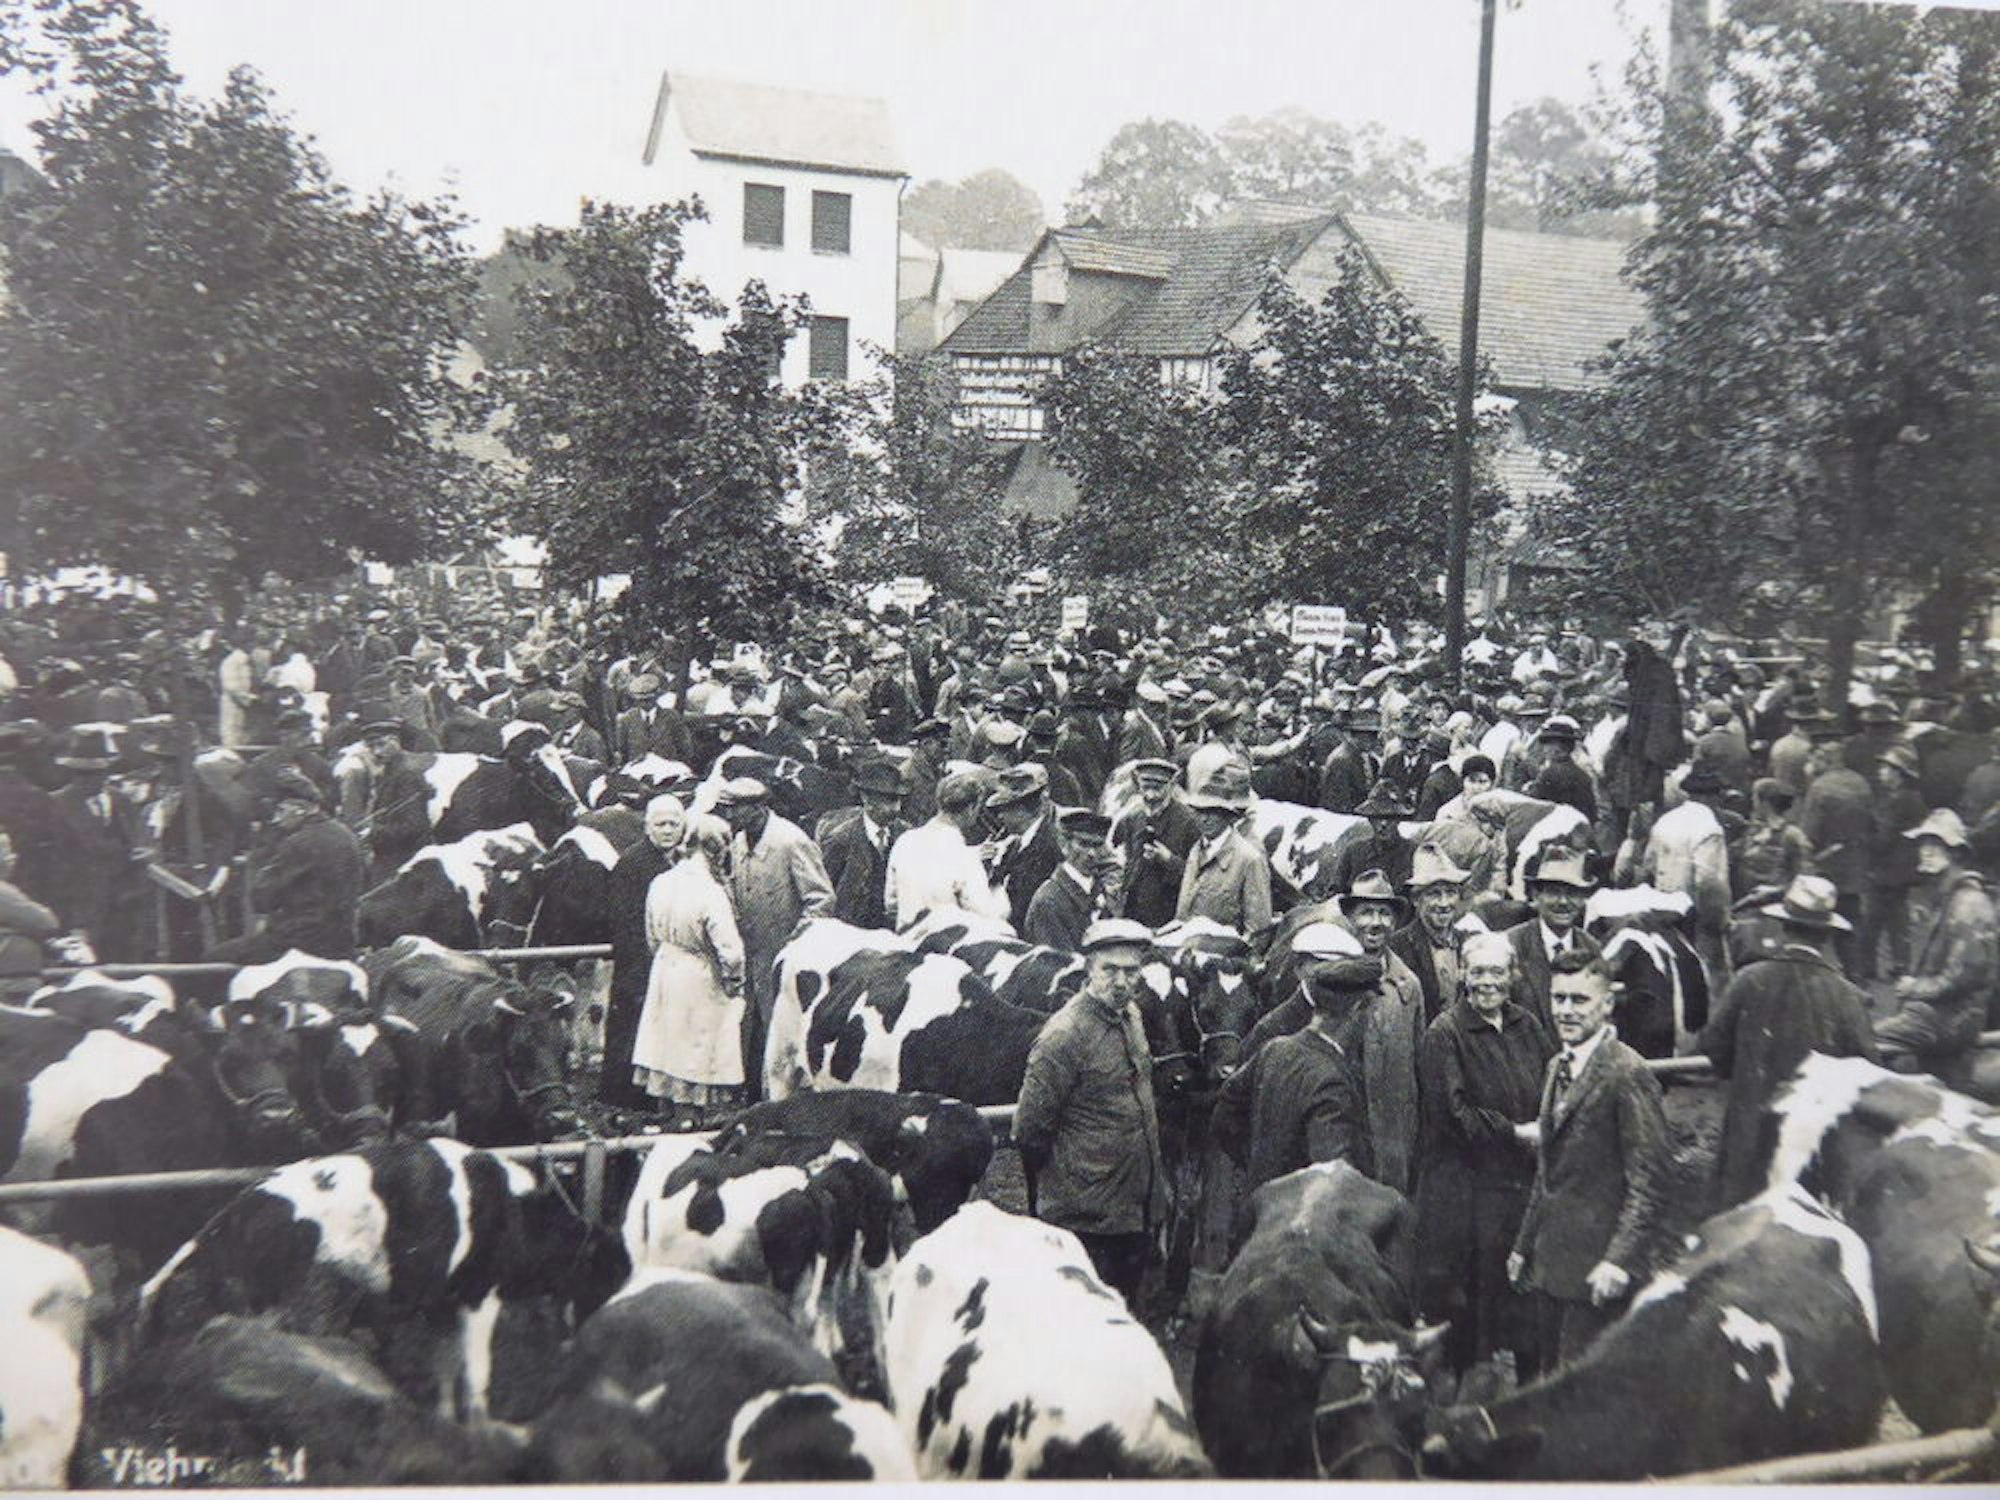 Um das Jahr 1930 entstand dieses Bild vom Viehmarkt im Oberbergischen Waldbröl, viele Juden trieben seinerzeit Viehhandel auch hier in der Region.